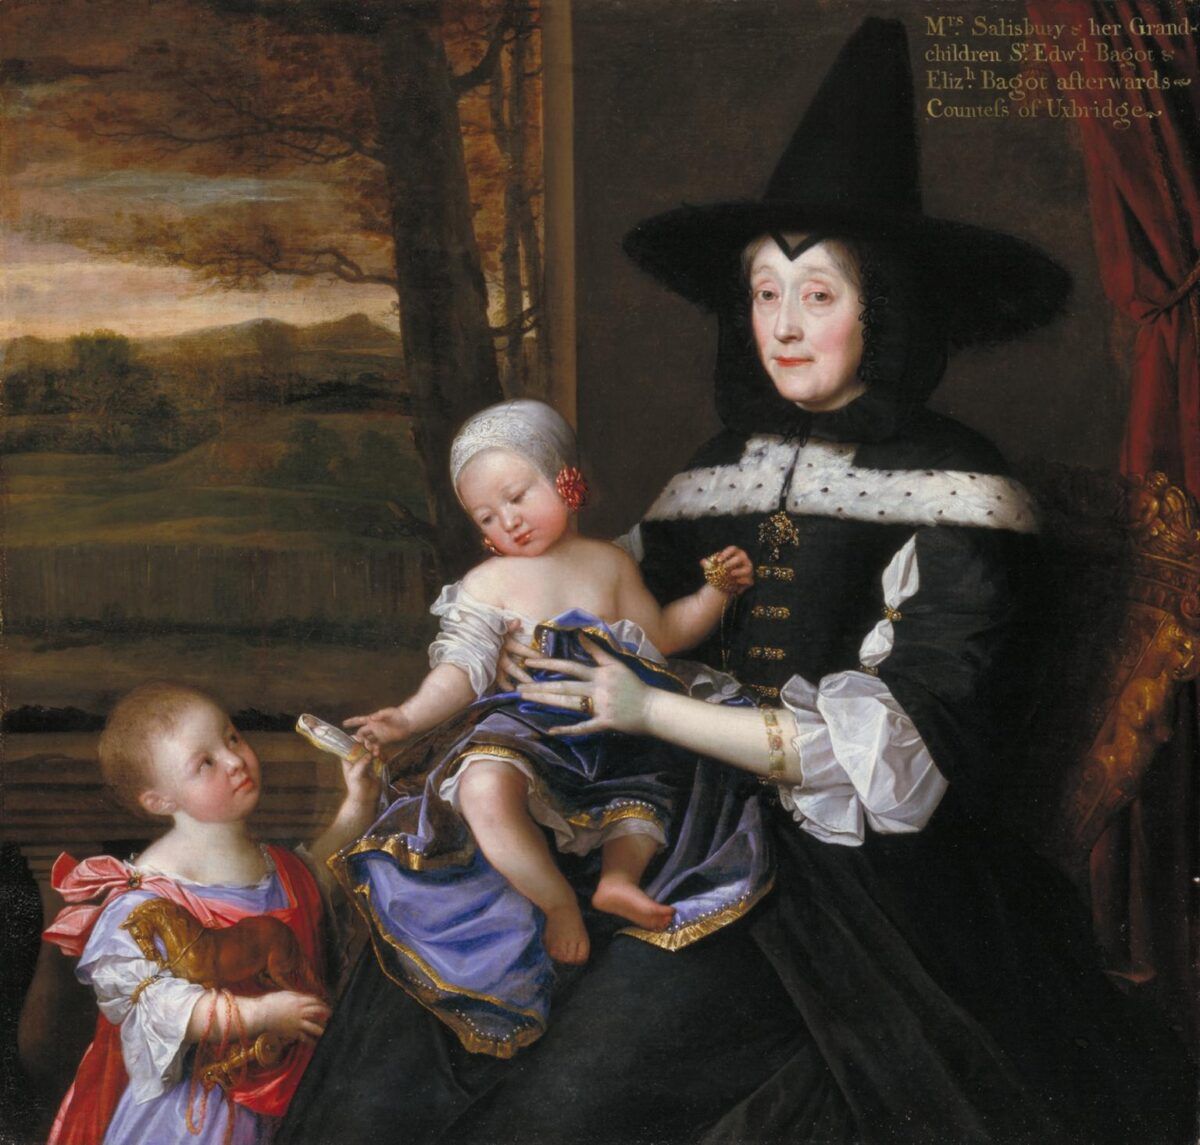 Portræt af fru Salesbury med sine børnebørn Edward og Elizabeth Bagot 1675-6 John Michael Wright 1617-1694 Præsenteret af Patrons of British Art gennem Tate Gallery Foundation 1993 http://www.tate.org.uk/art/work/T06750